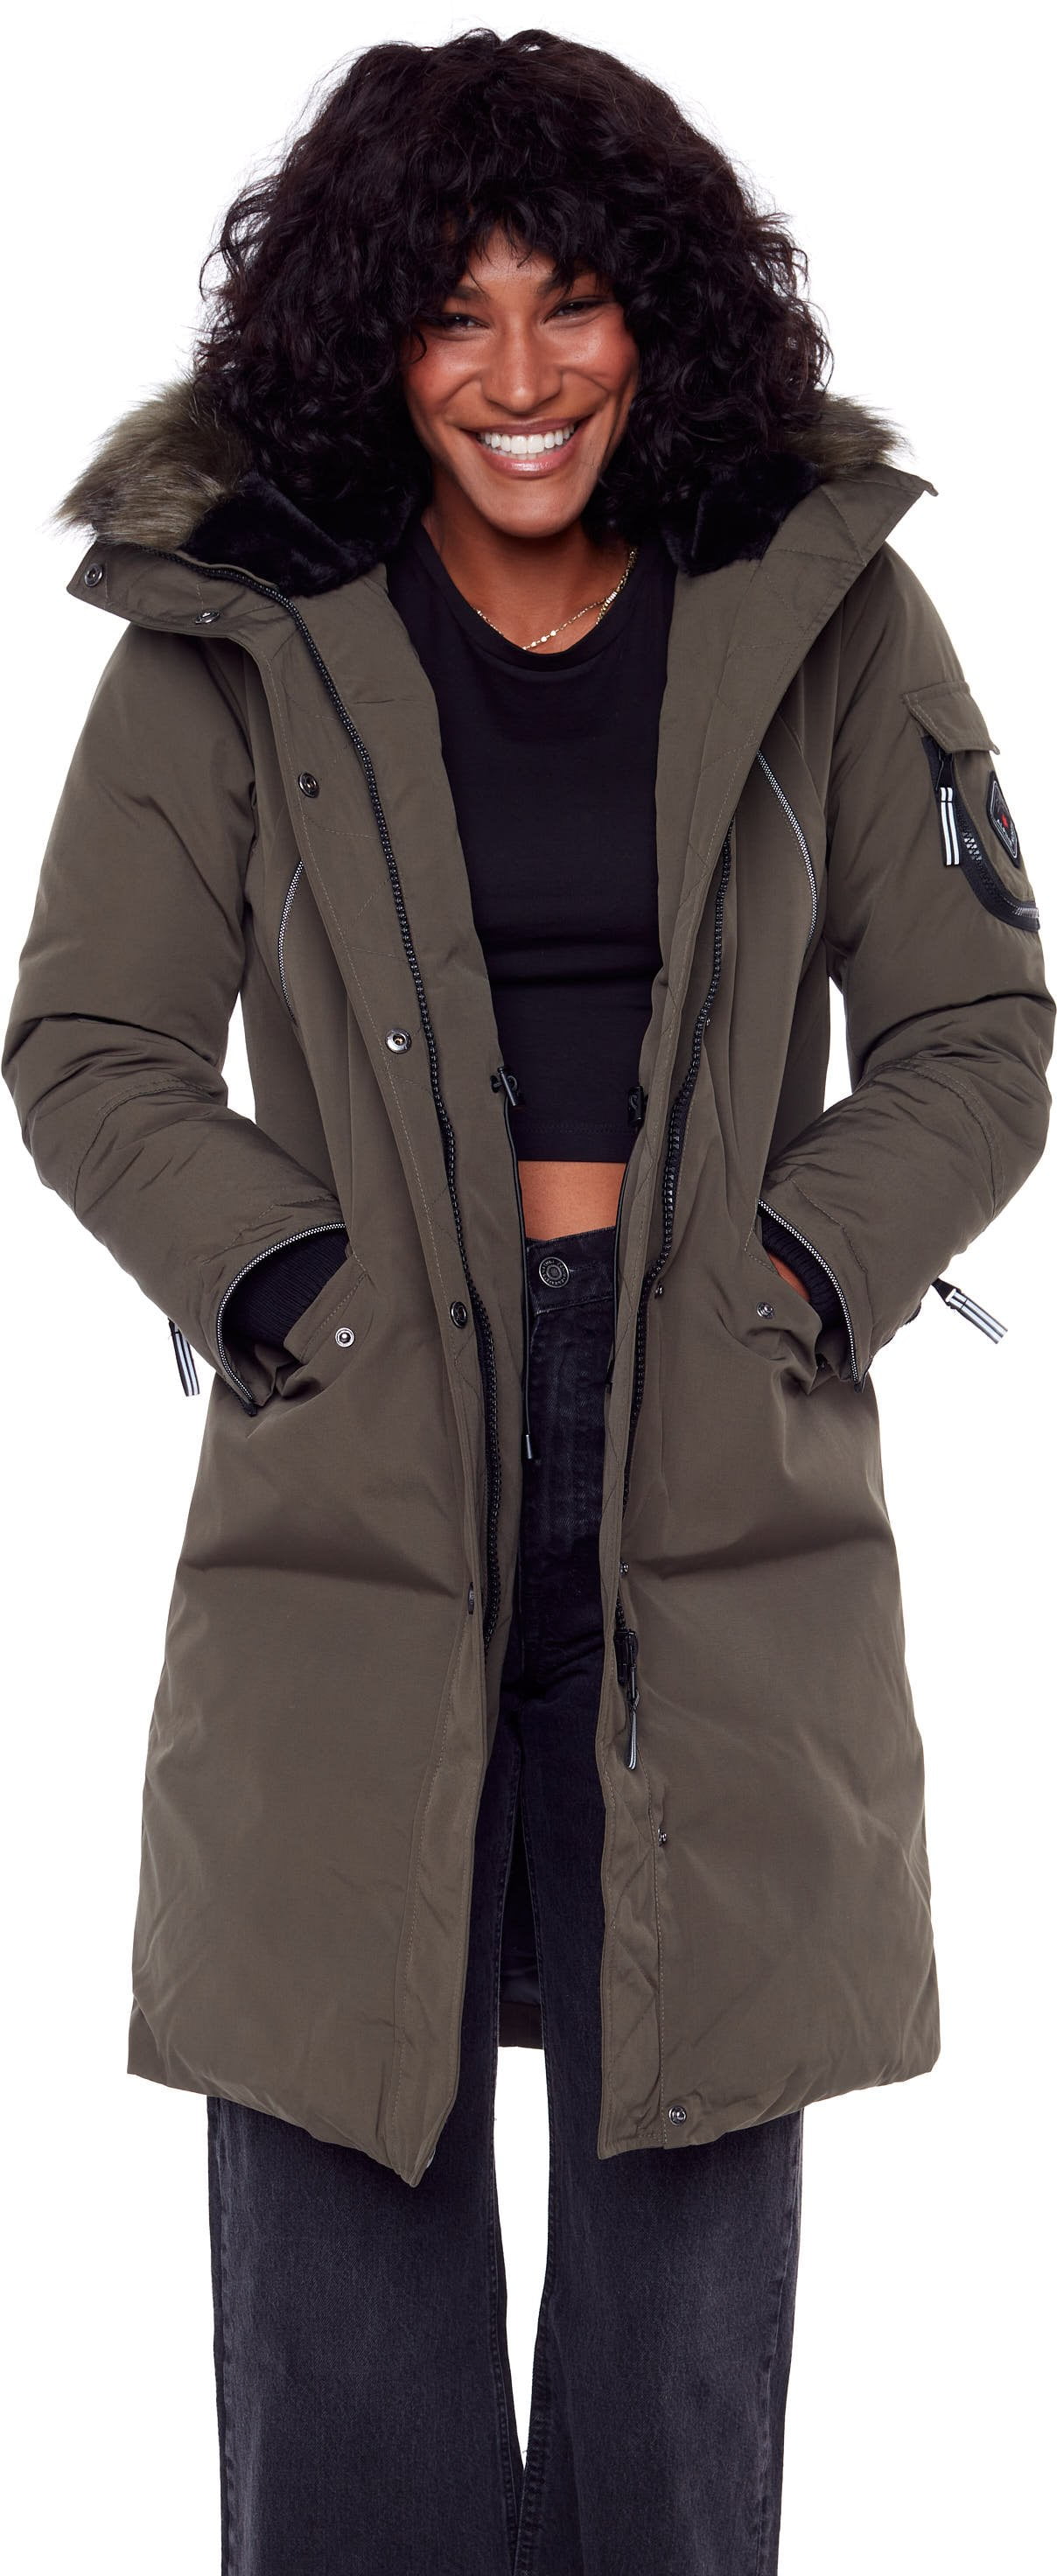 Women's Navy Vegan Down Parka Jacket - Water Repellent, Windproof, Warm Winter Coat with Faux Hood - Walmart.com